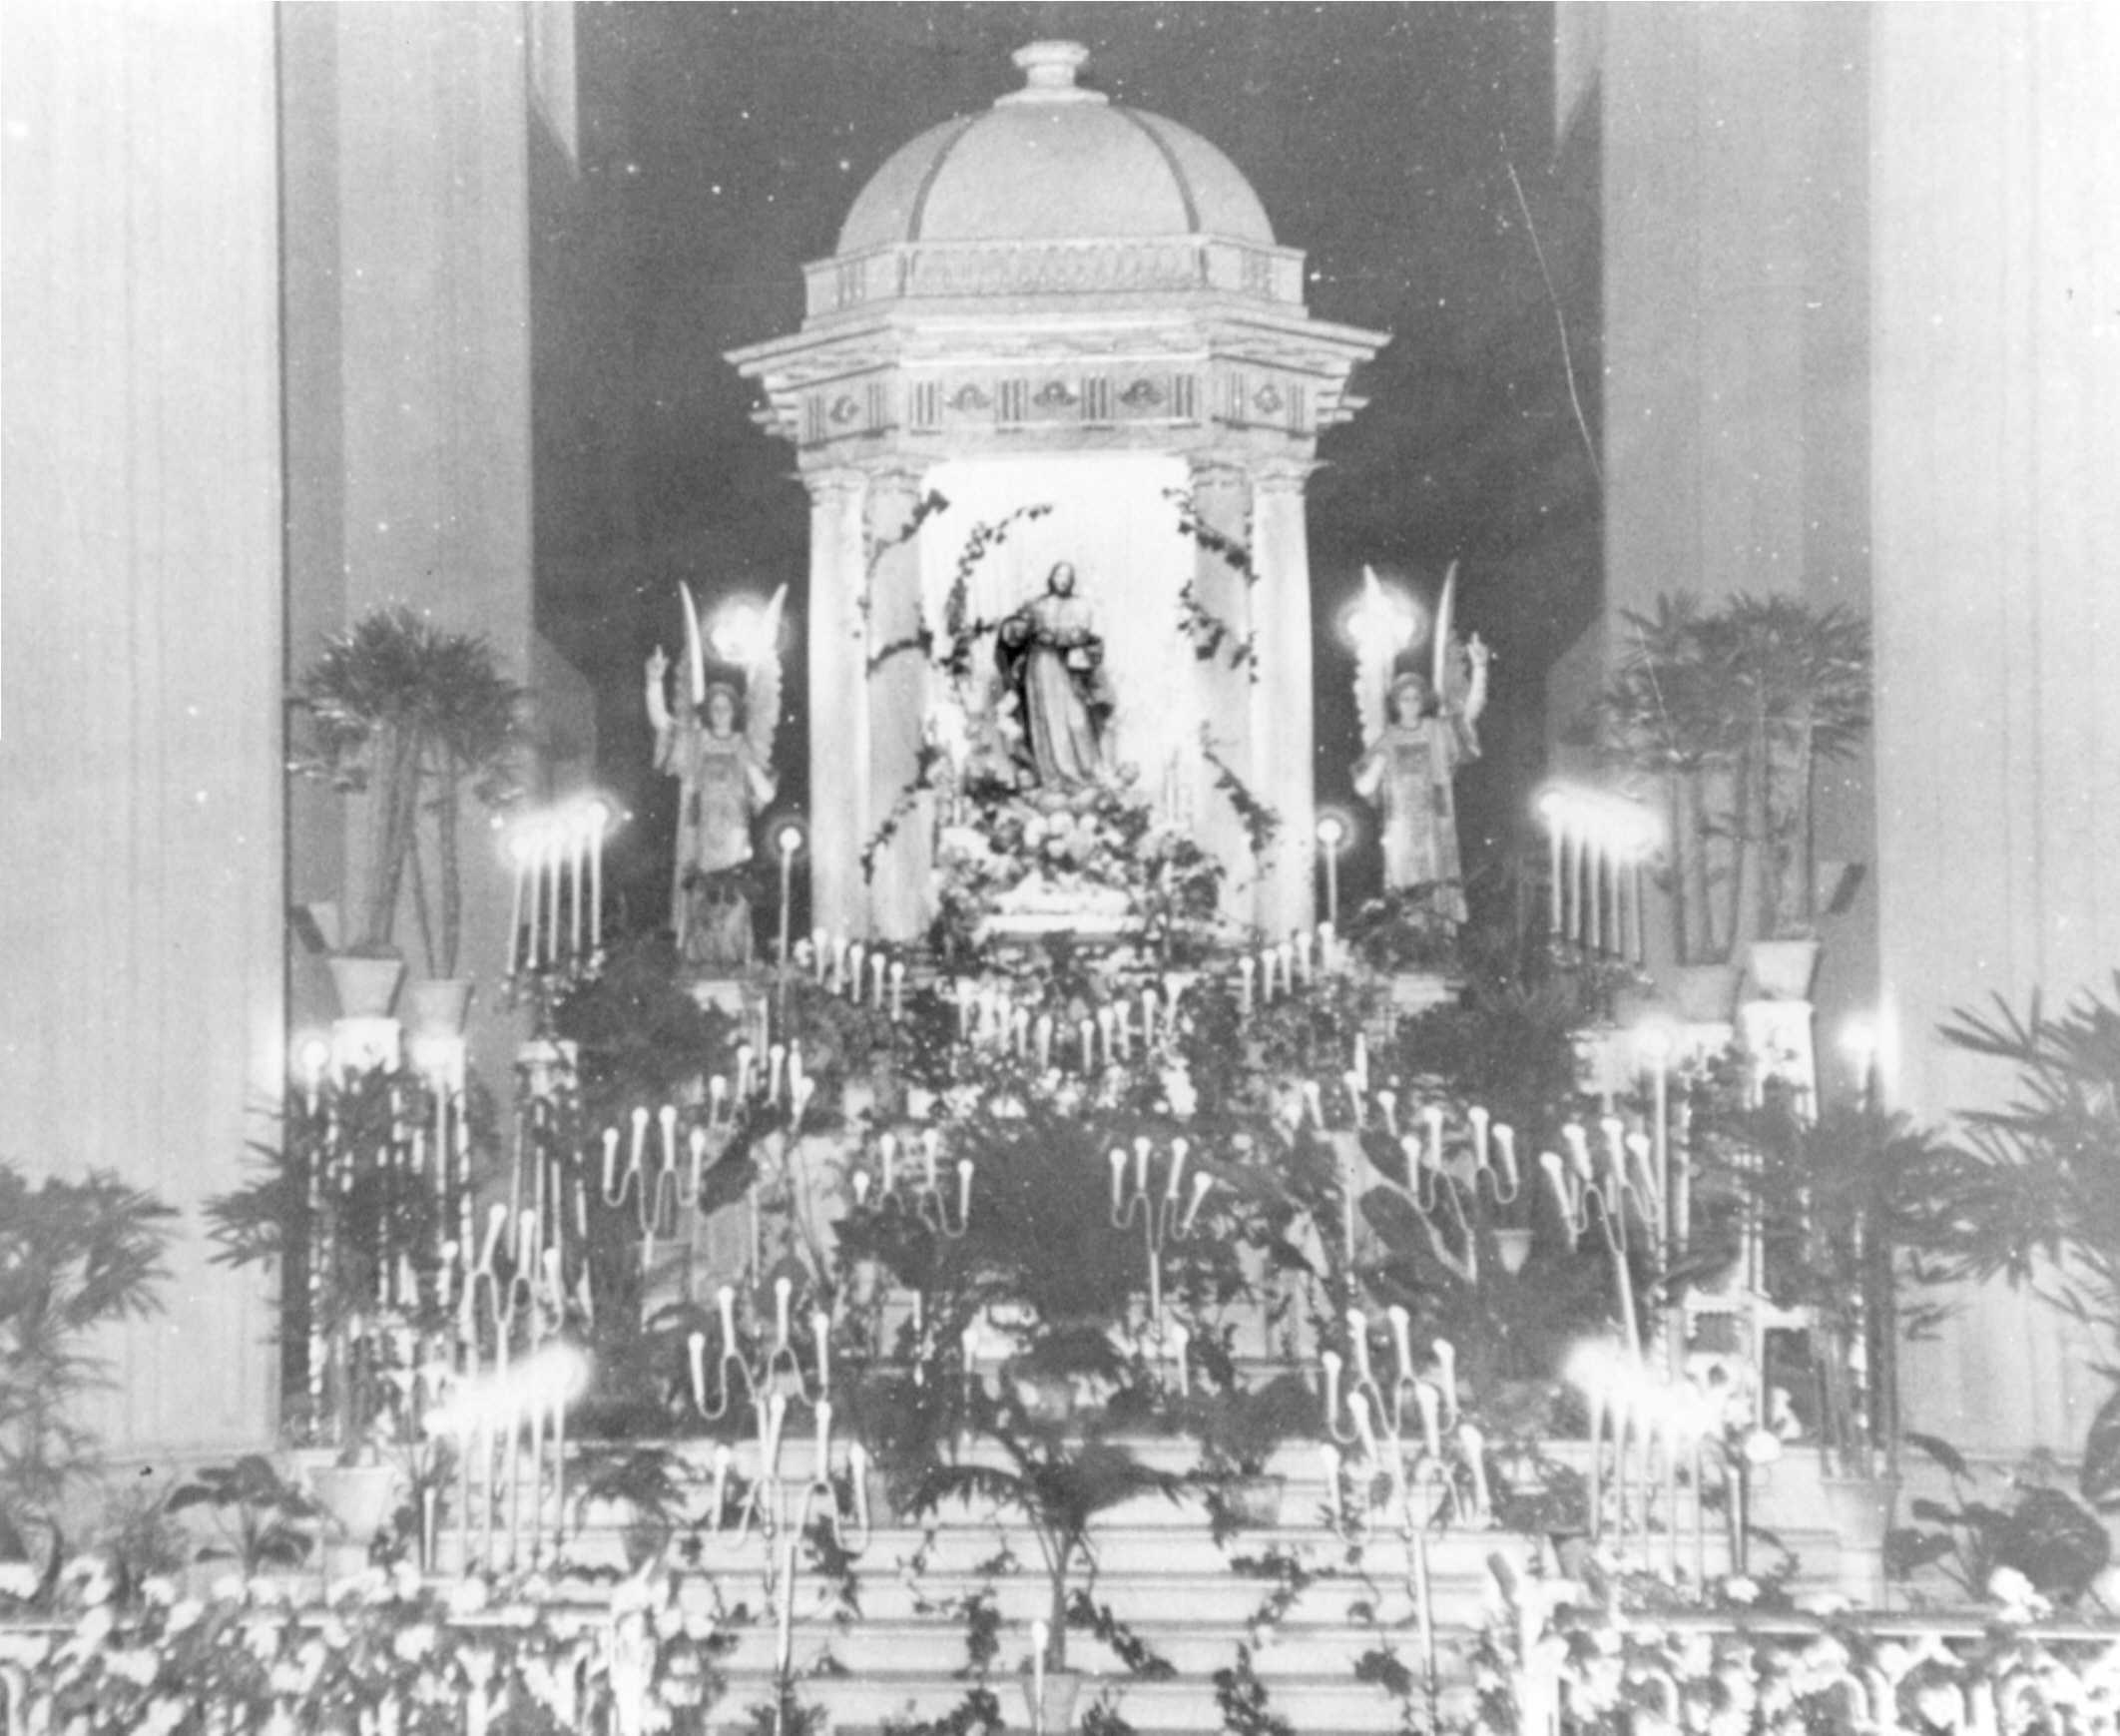 Aspecto del altar mayor de la iglesia de Santiago en uno de los tradicionales “alumbrados” ó novenas de Mayo.
El presente testimonio gráfico corresponde al confeccionado por el Coro parroquial.